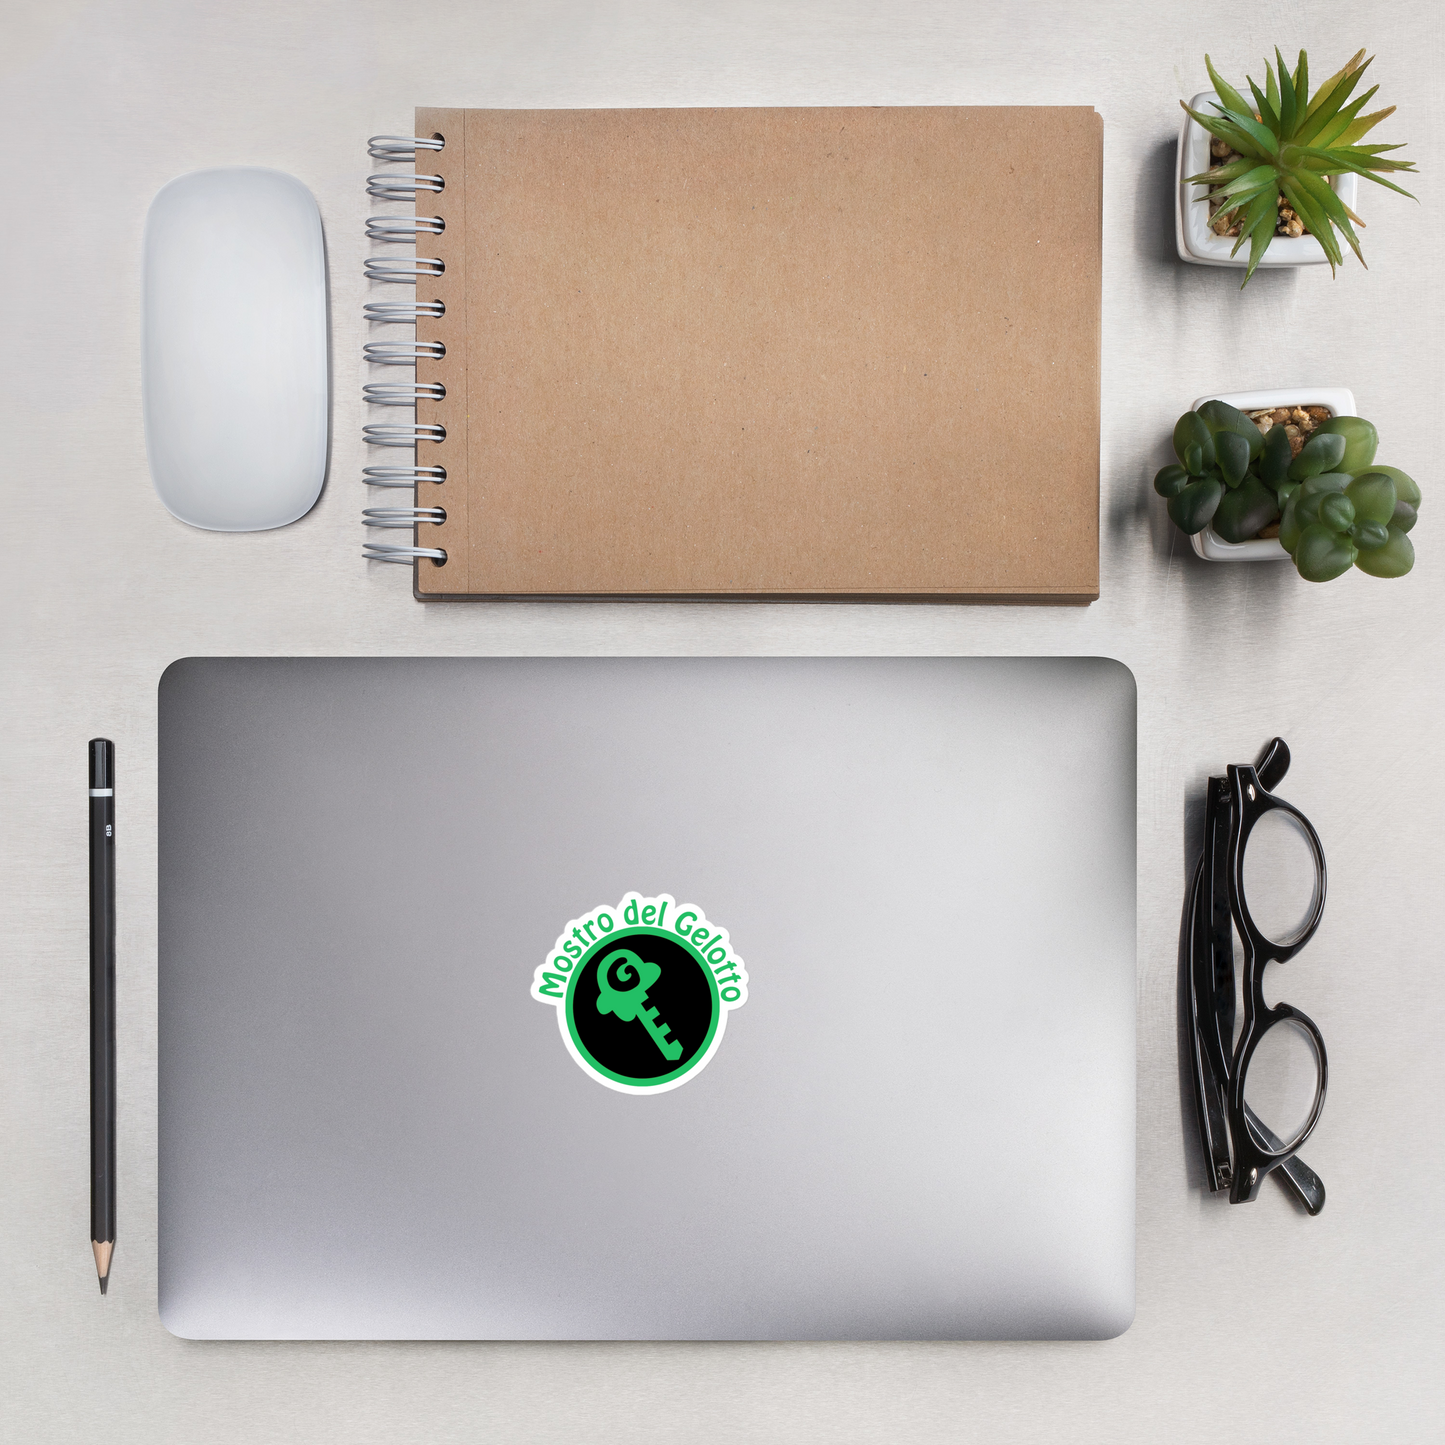 Mostro del Gelotto / GKEY Bubble-free stickers (green and black logo)